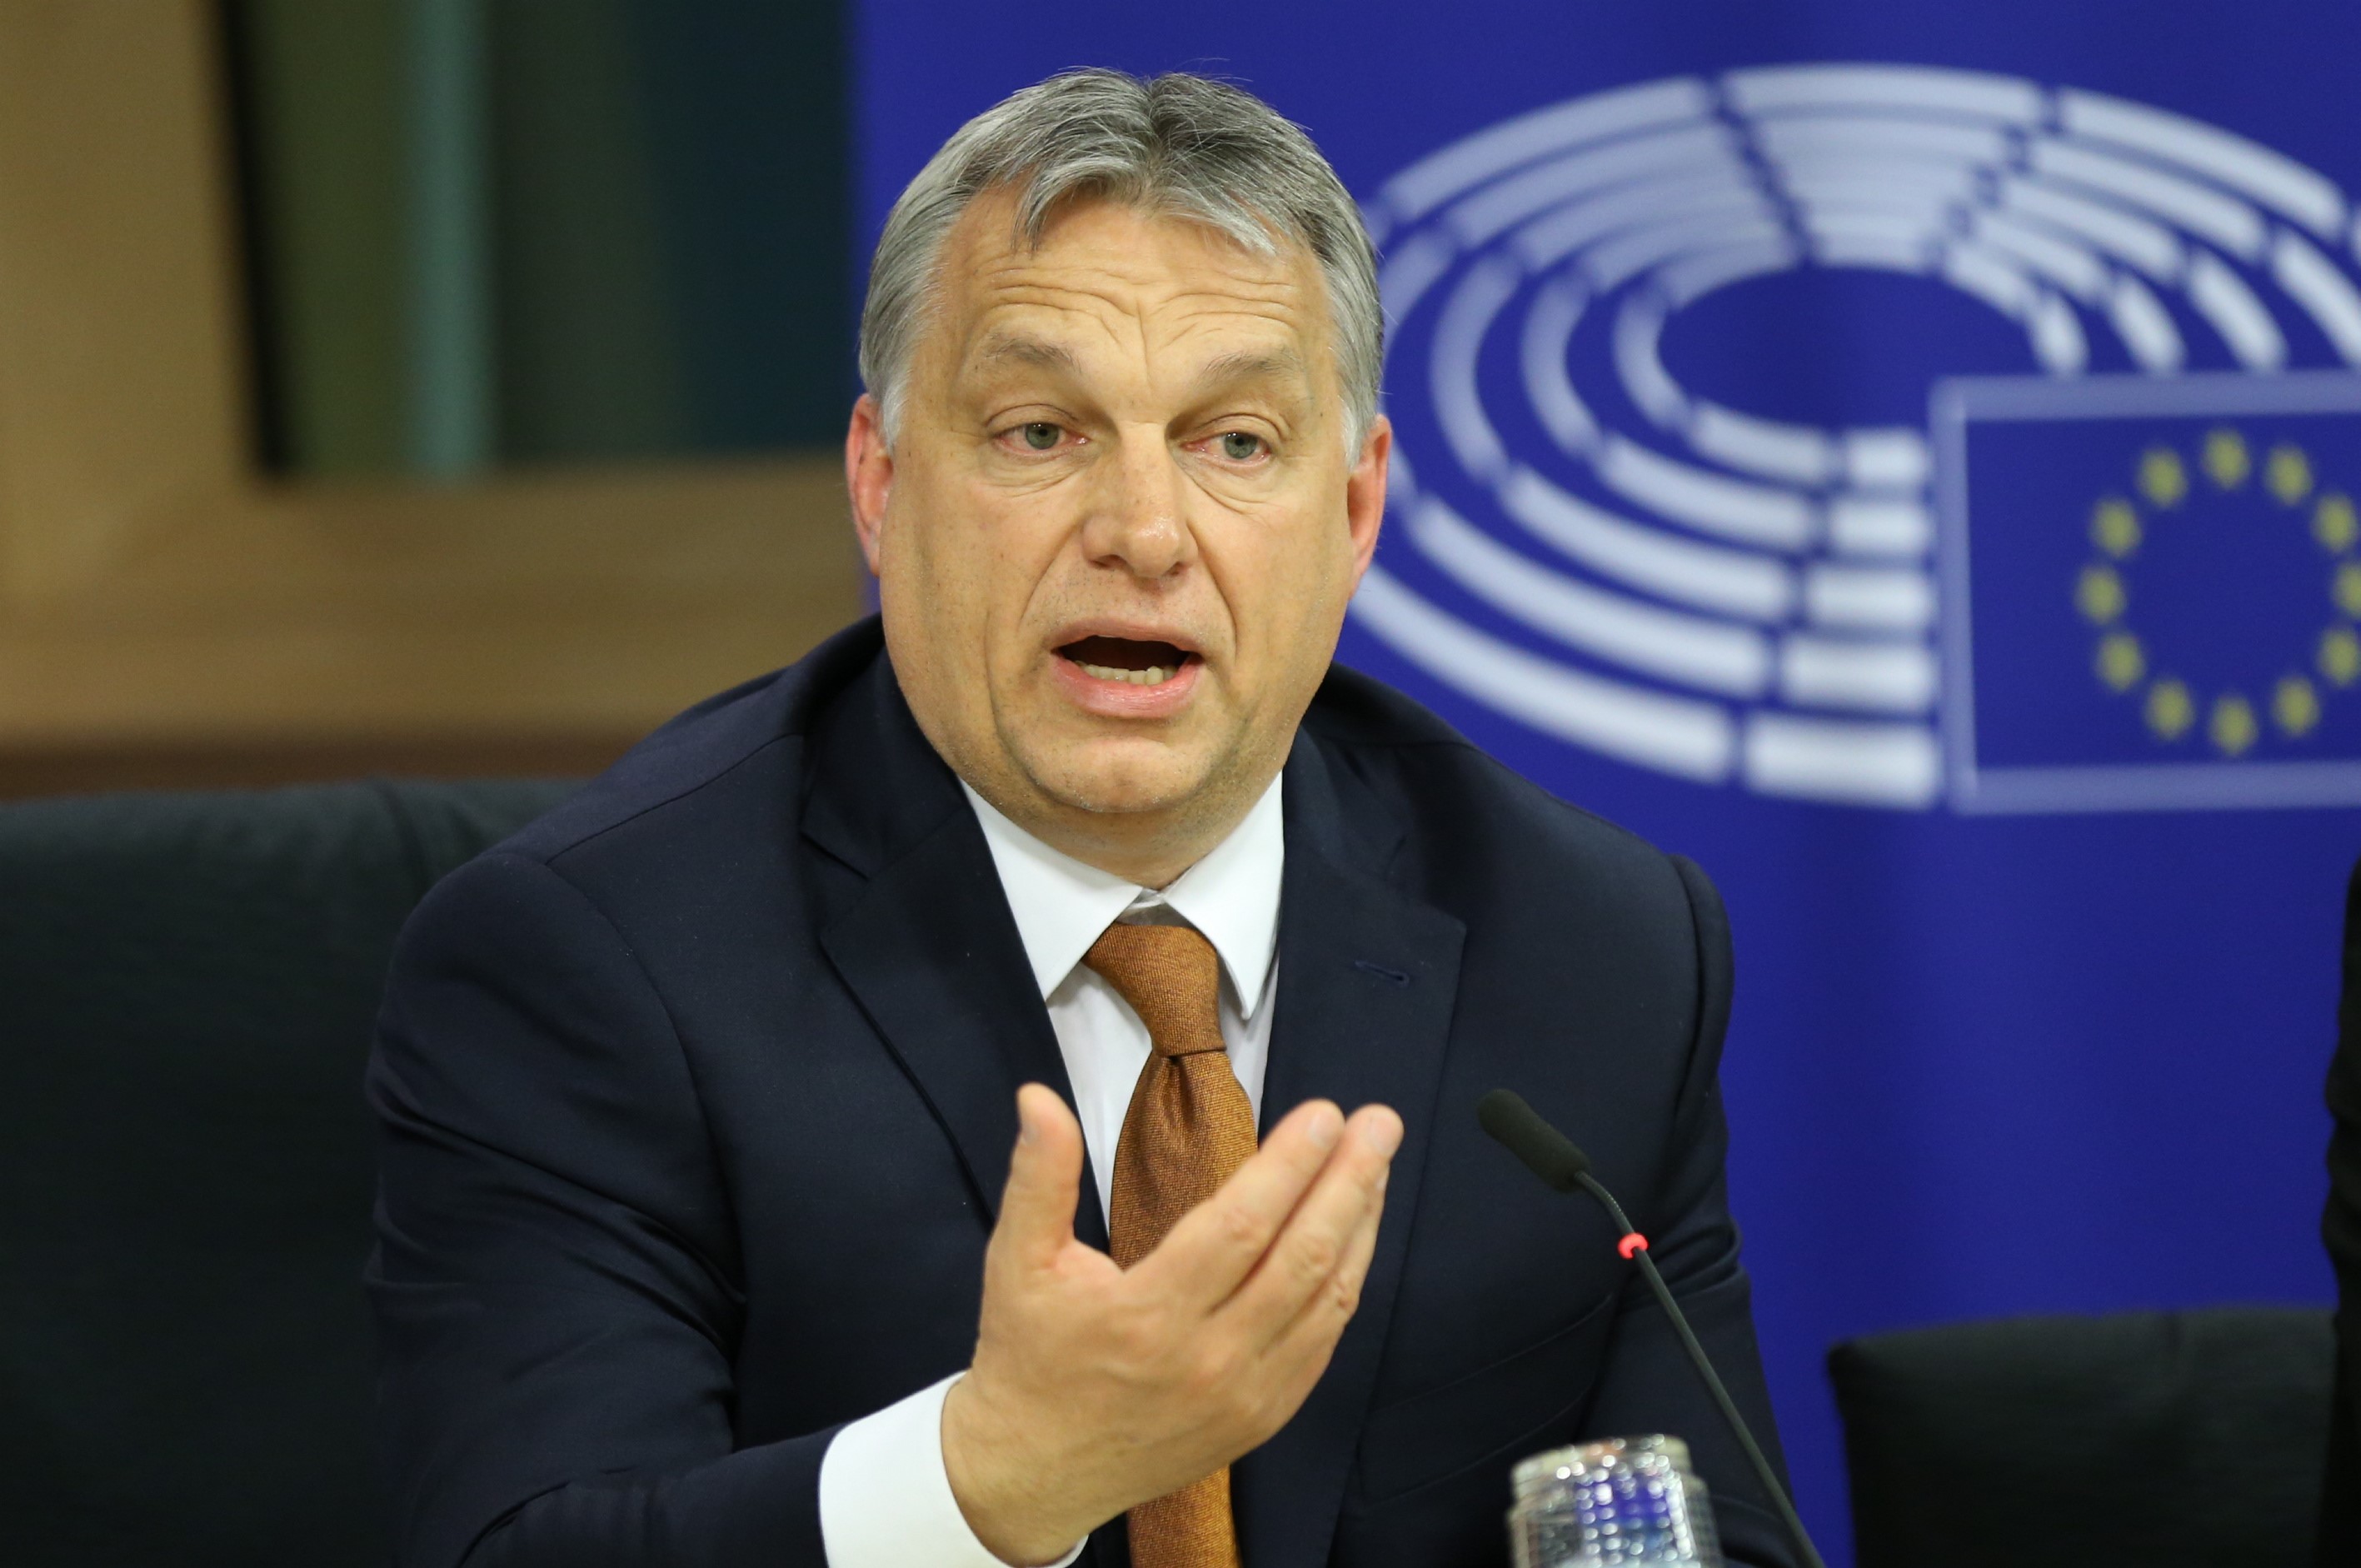 Zeci de mii de persoane au protestat în Ungaria după ce Viktor Orban a fost reales premier